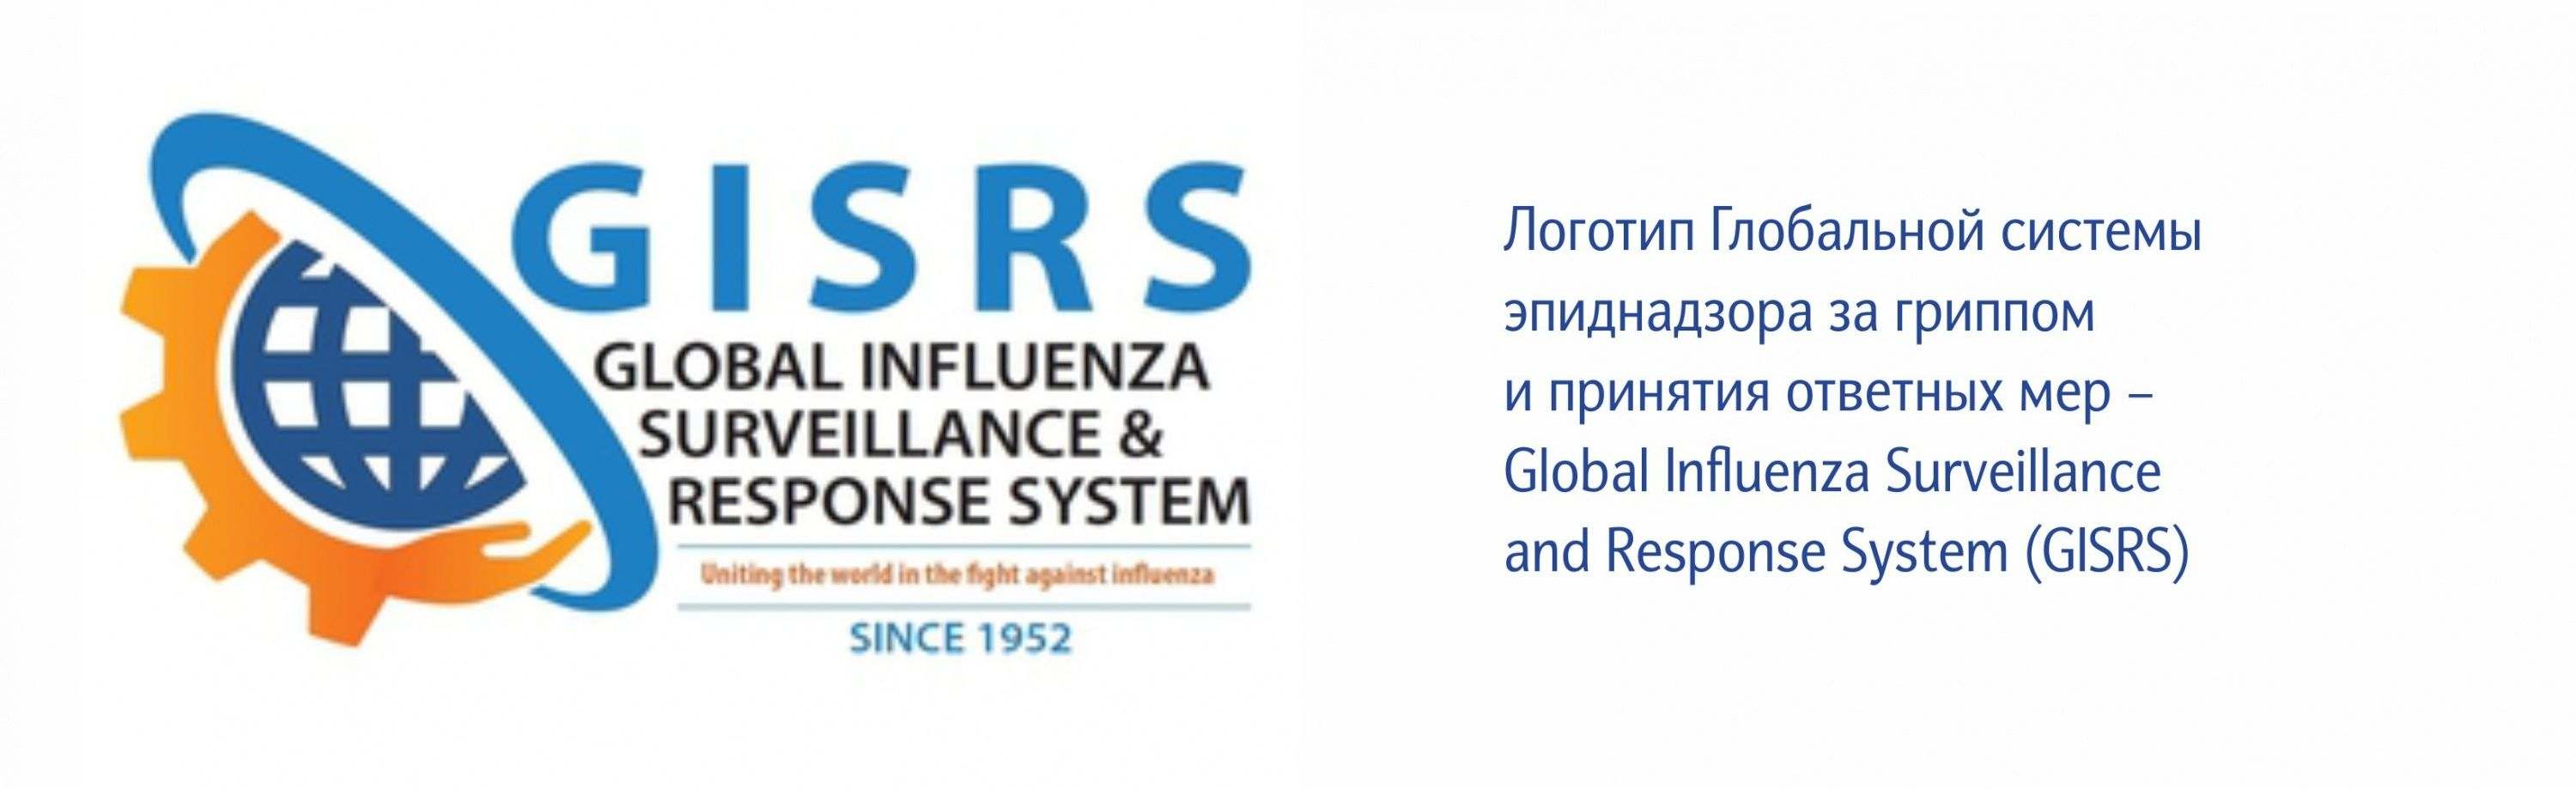 Глобальная система эпиднадзора за гриппом и принятия ответных мер.jpg